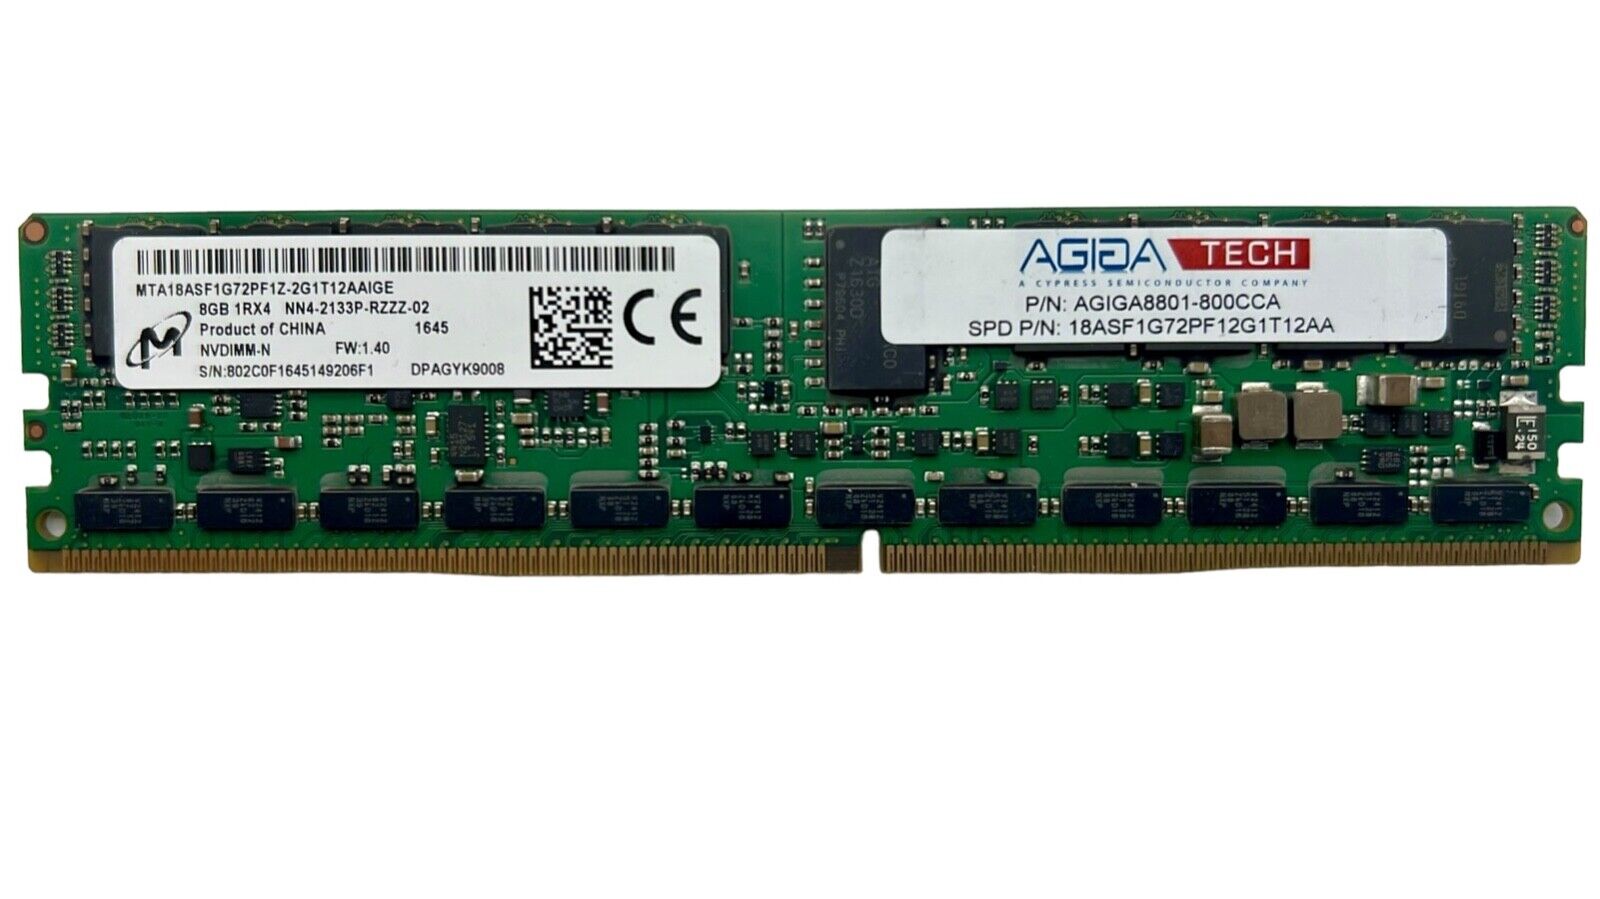 Micron 8GB 1X8GB PC4-17000 DDR4-2133P SERVER SDRAM MTA18ASF1G72PF1Z-2G1T12AAIGE